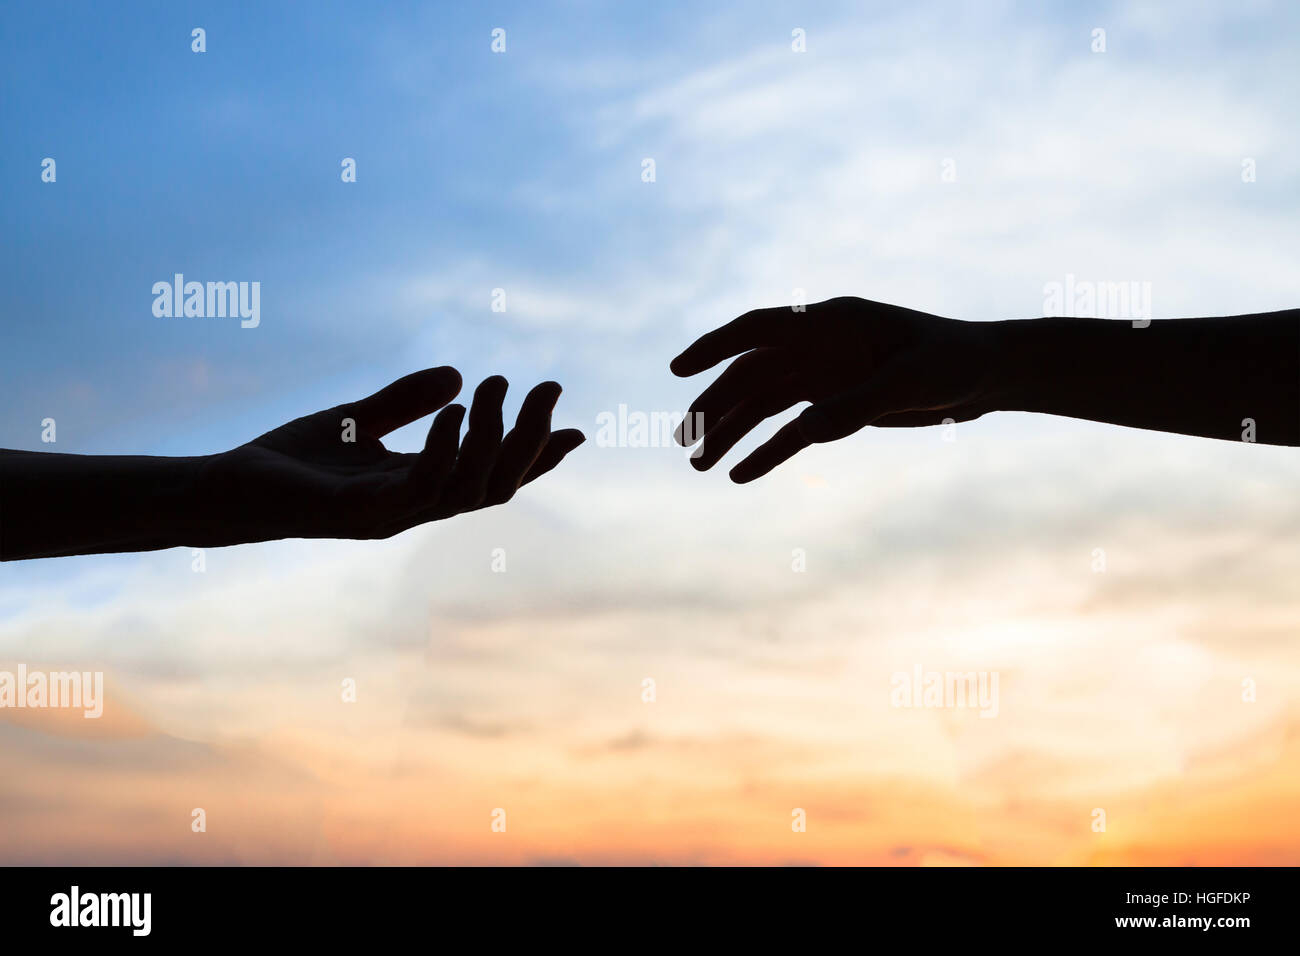 Barmherzigkeit, zwei Hände Silhouette am Himmel Hintergrund, Verbindung oder Hilfe Konzept Stockfoto